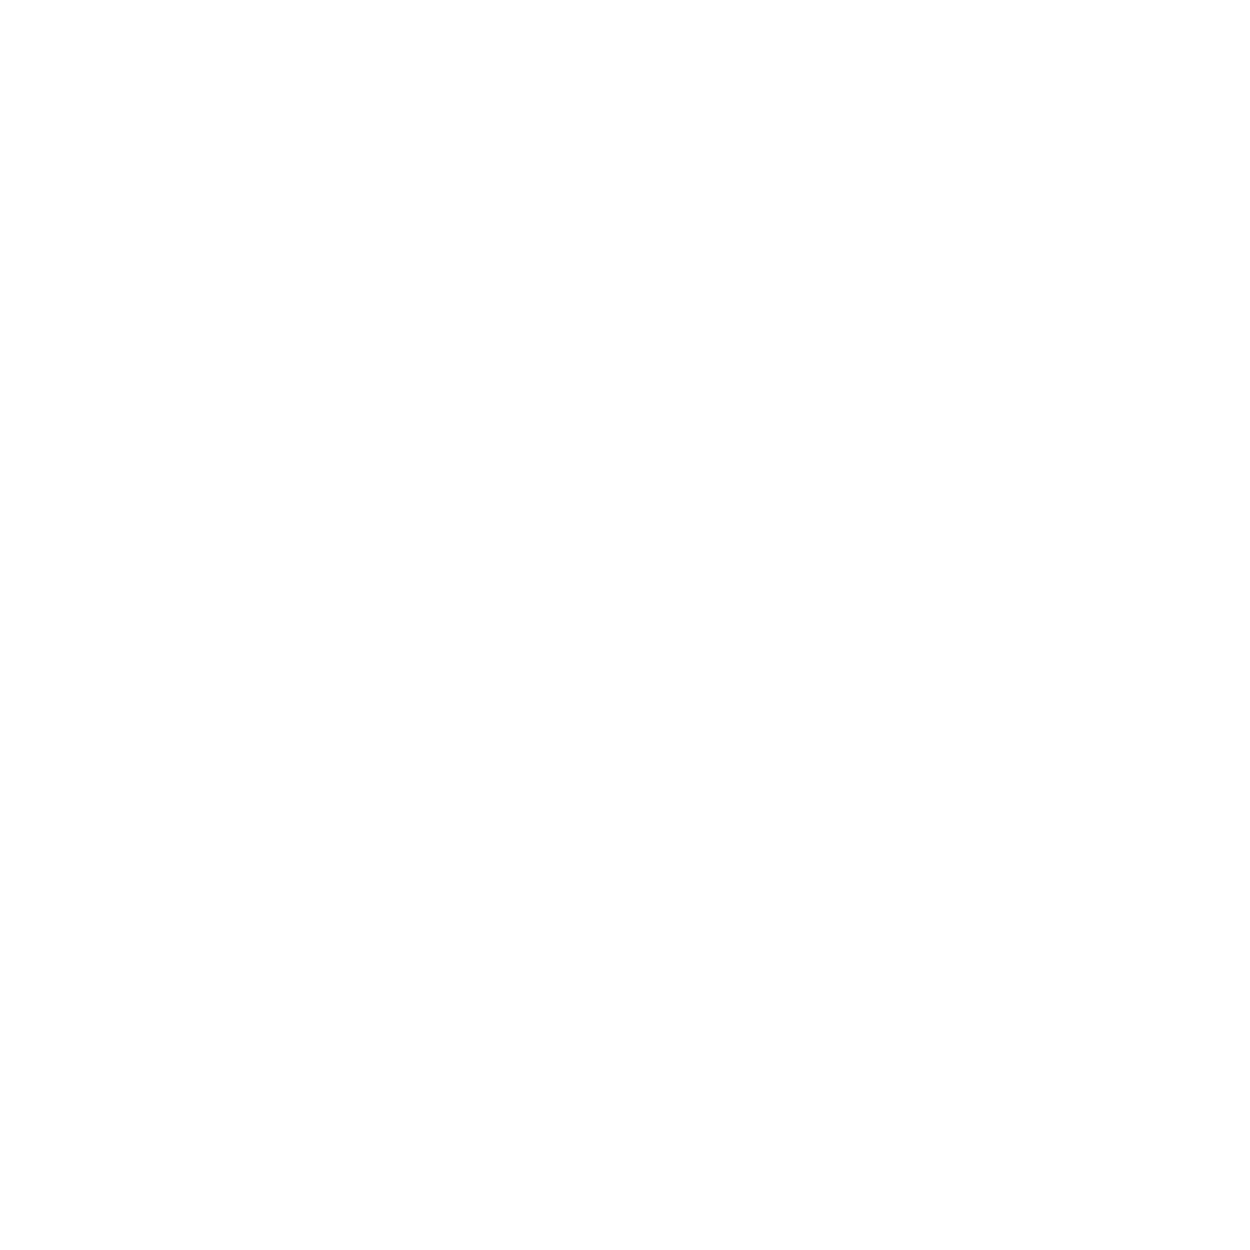 Ayuda P3 Cycles logo